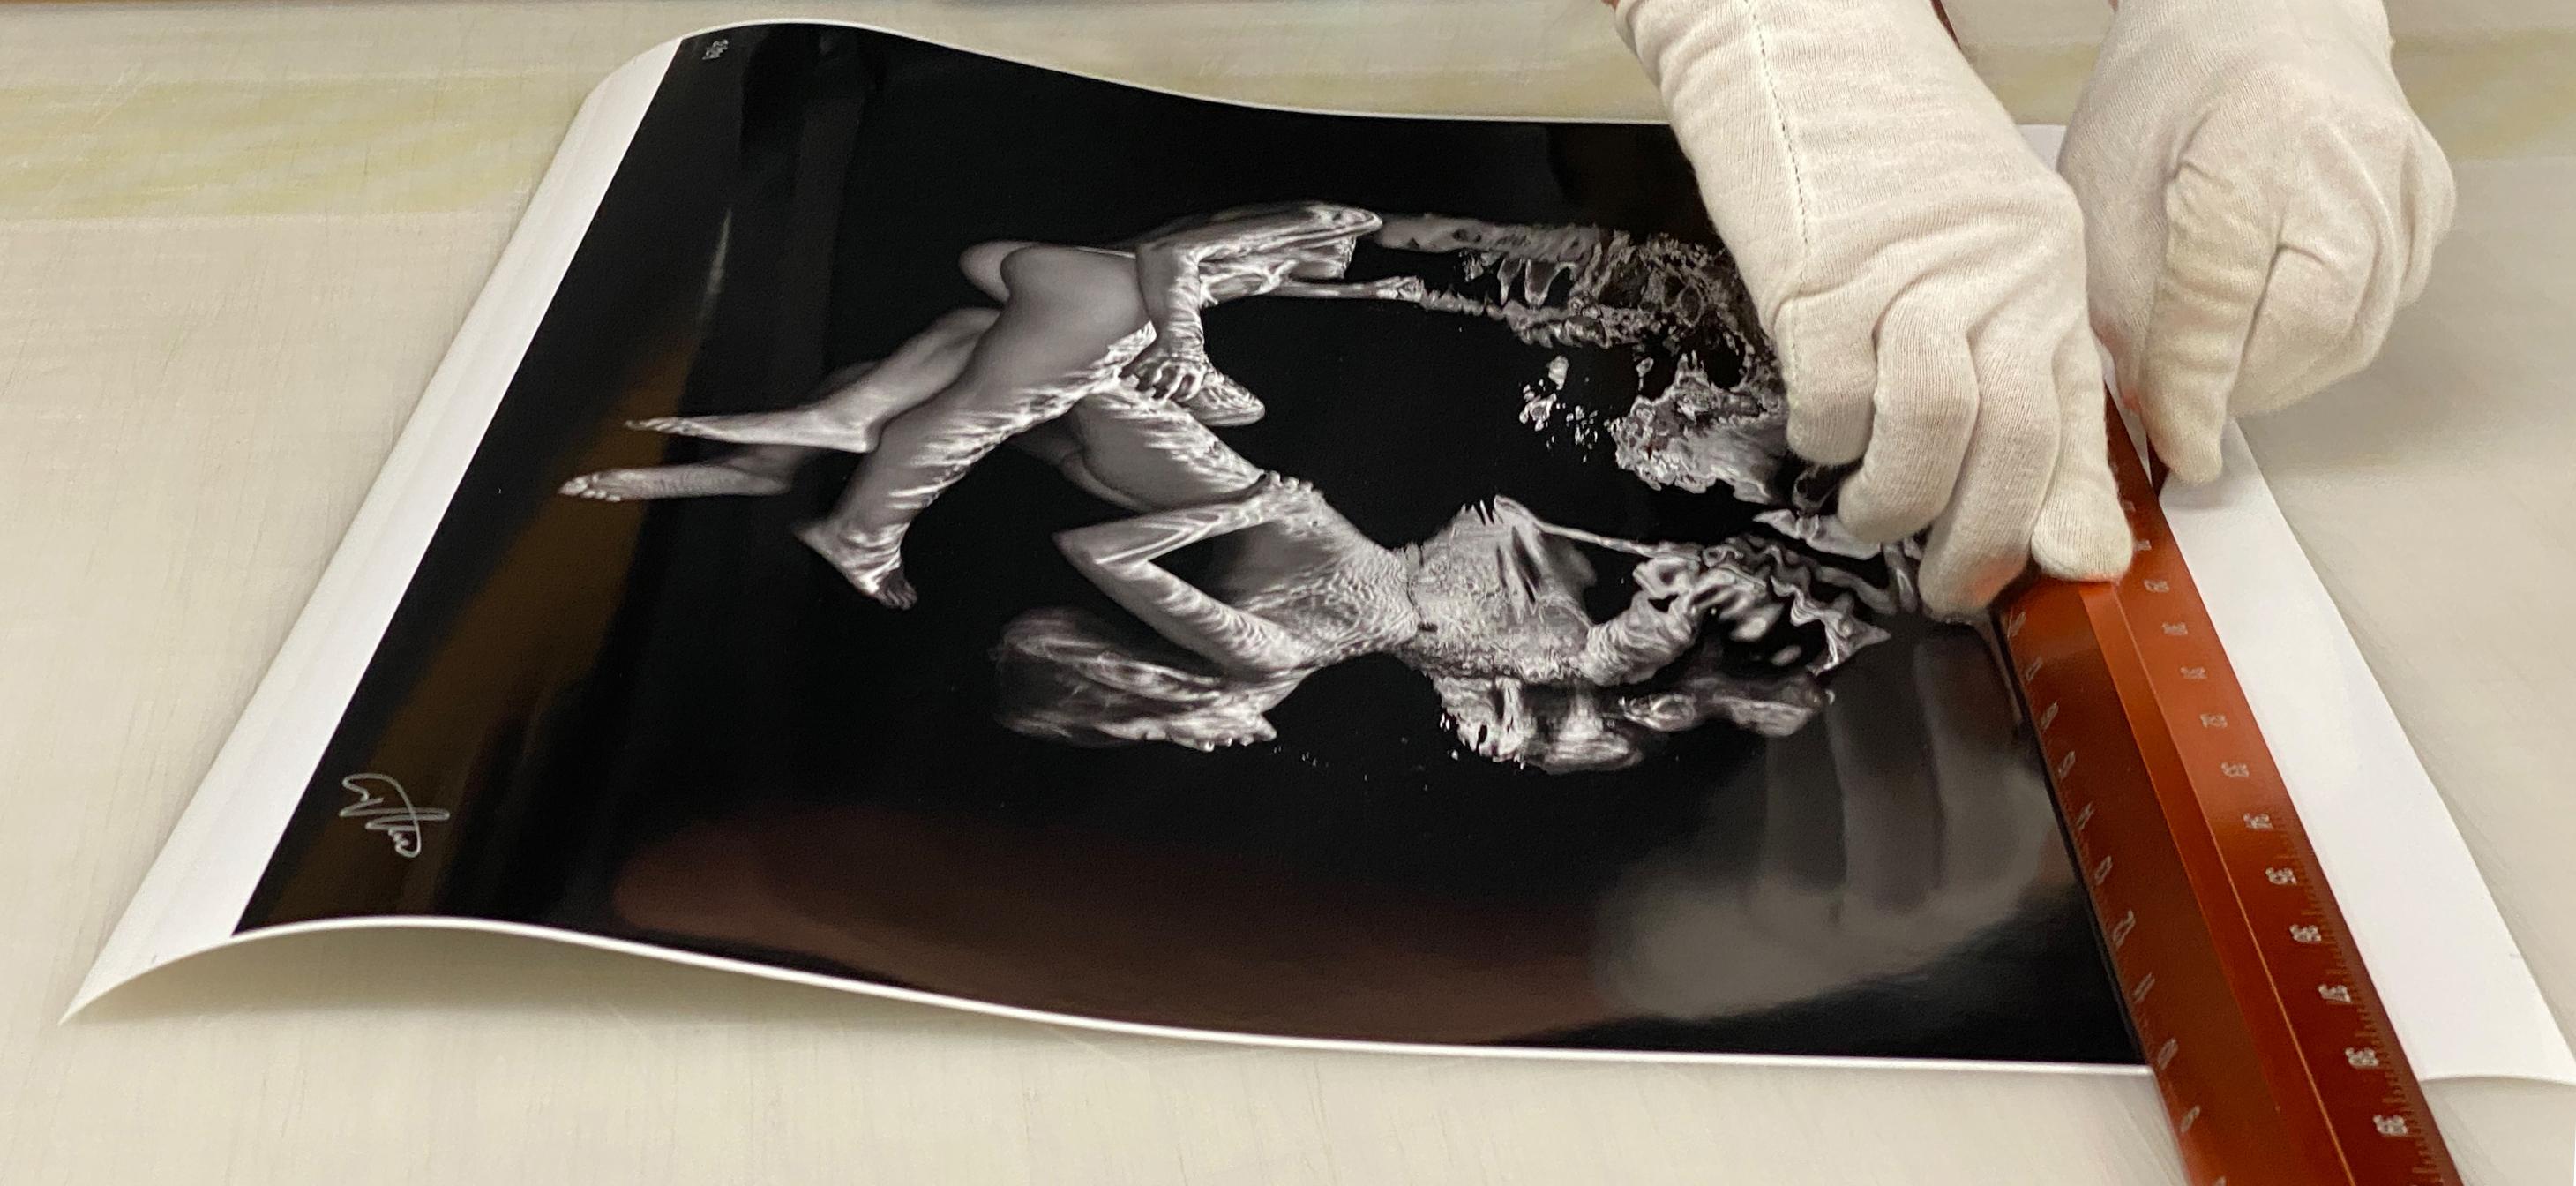 Double Trouble - photographie sous-marine de nu en noir et blanc - tirage papier 17 x 24